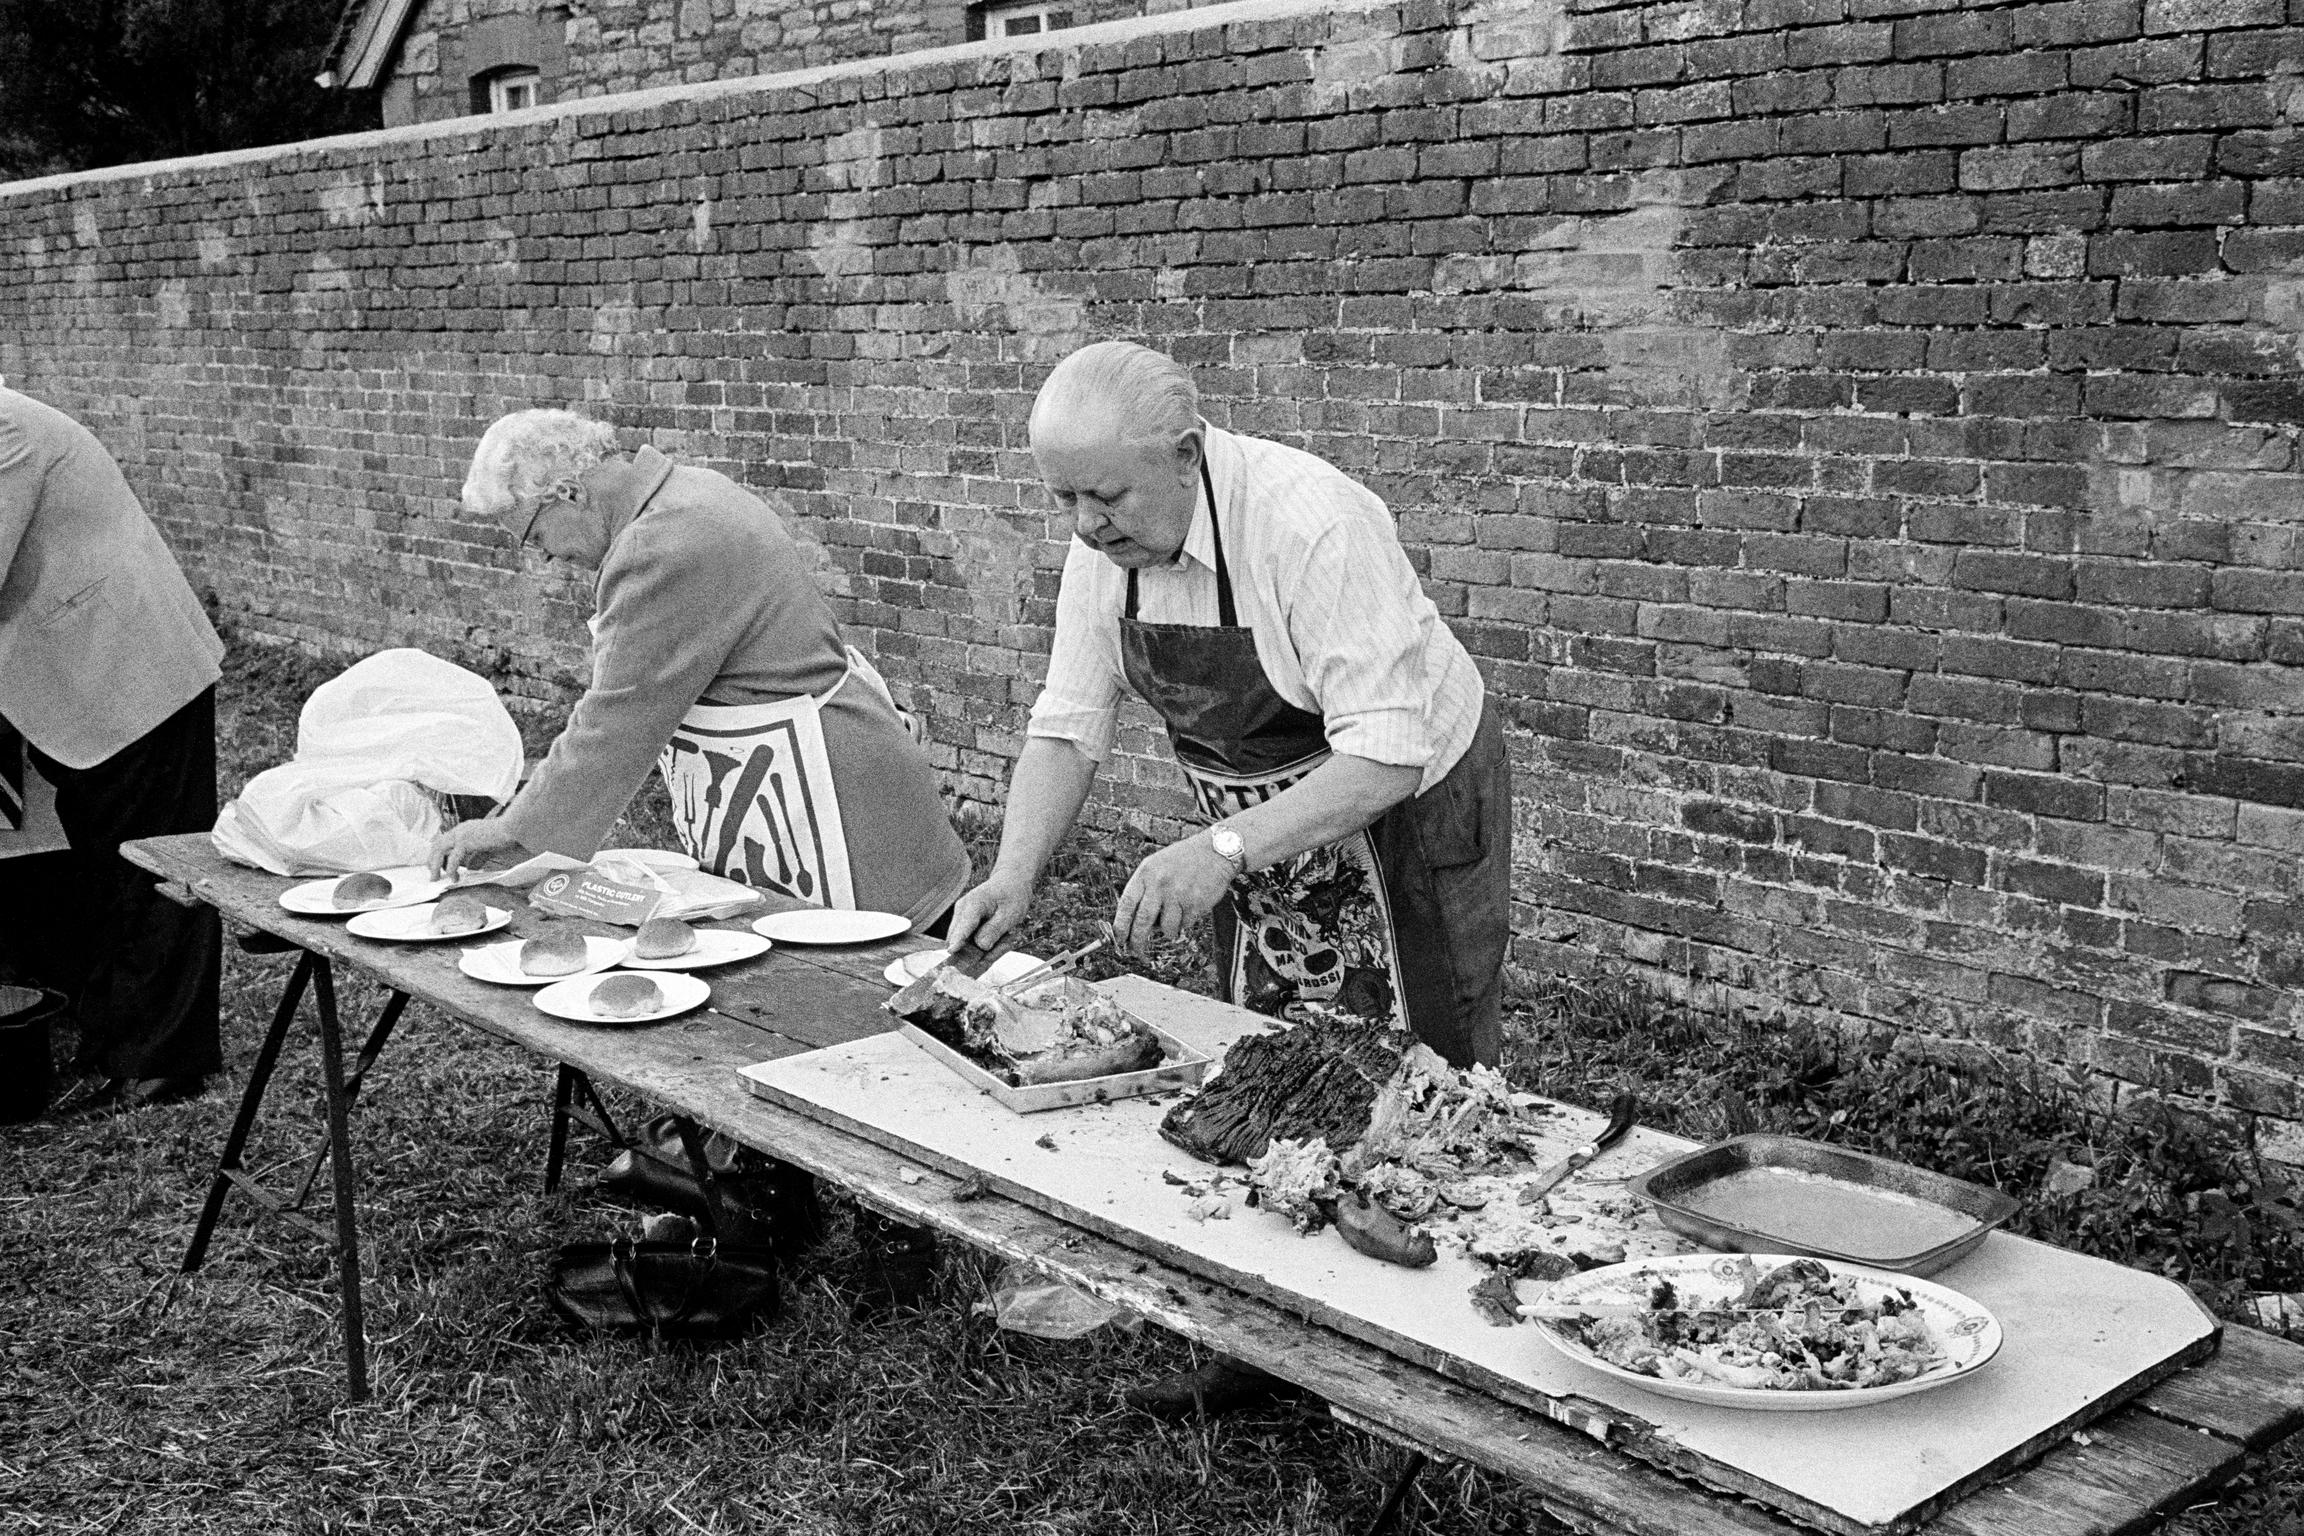 Pork rolls at a Tintern festival, Wales